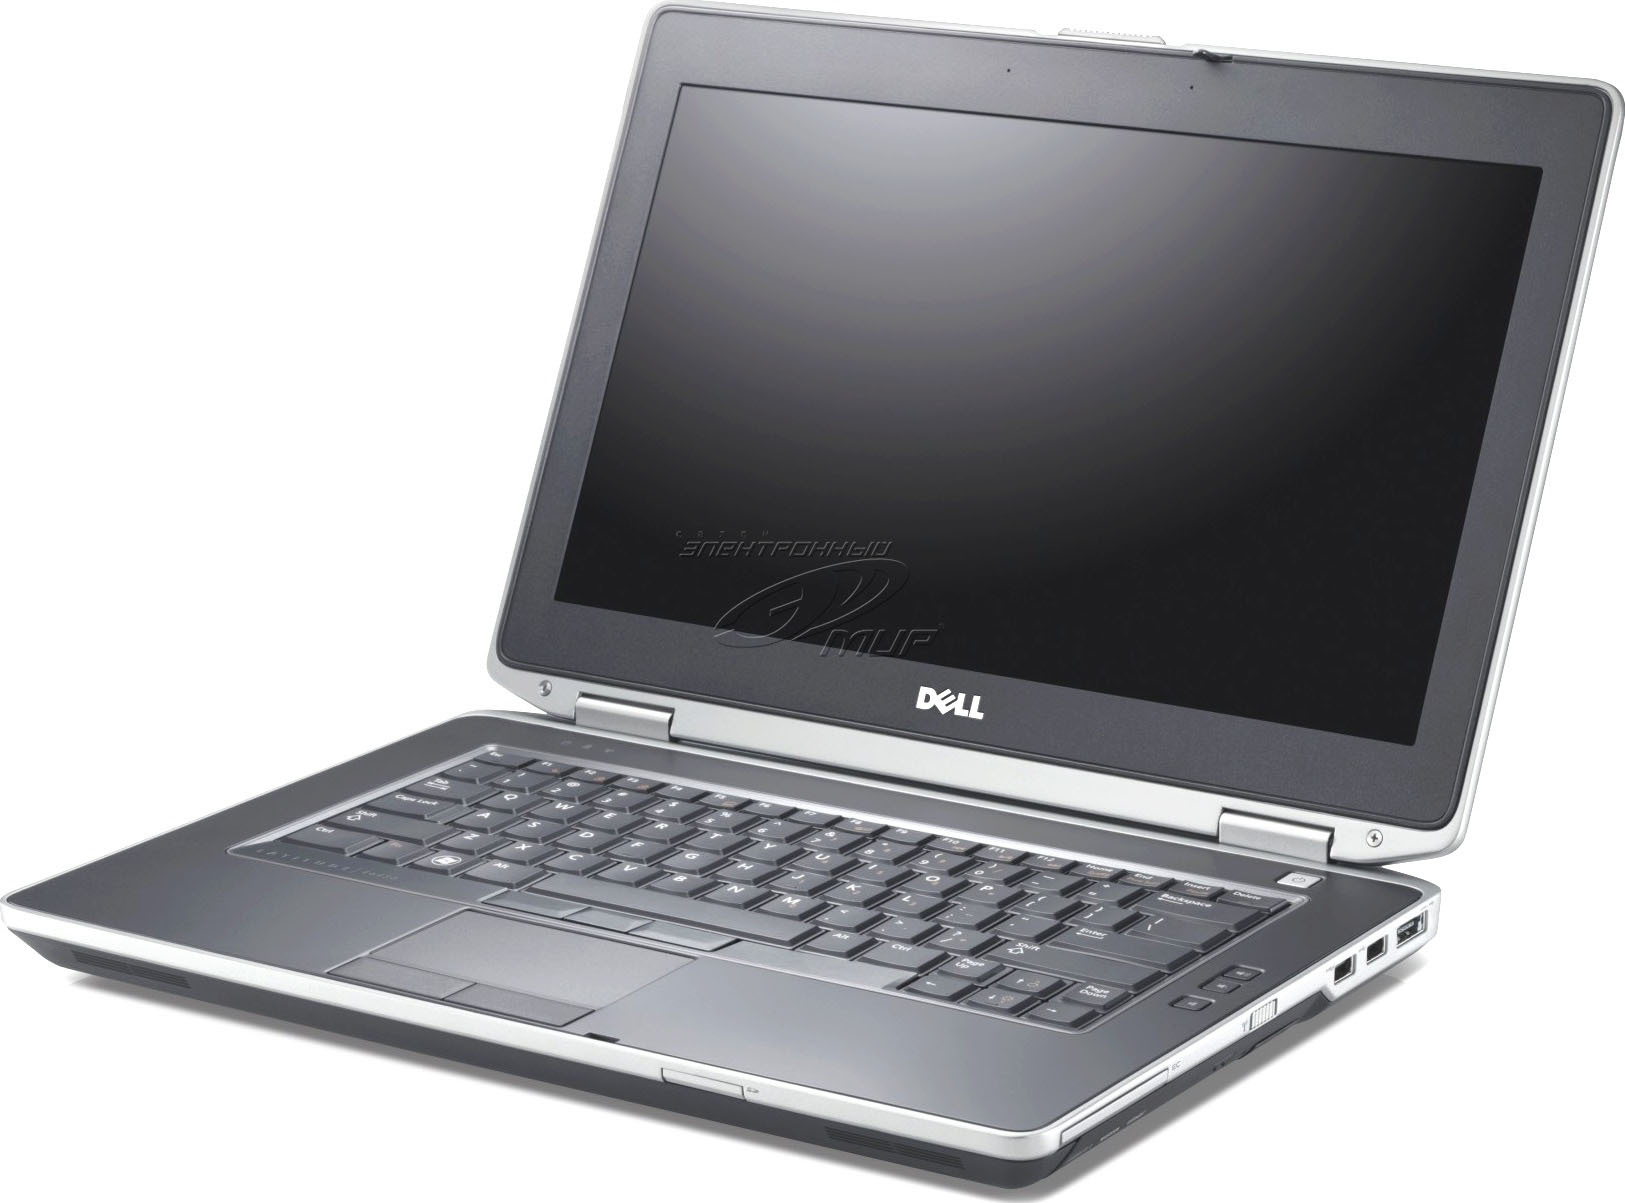 Laptop Dell Latitude E6430 - Intel Core i5-3320M 2.6GHz, 4GB RAM, 320GB HDD, Intel HD Graphics 4000, 14 inch